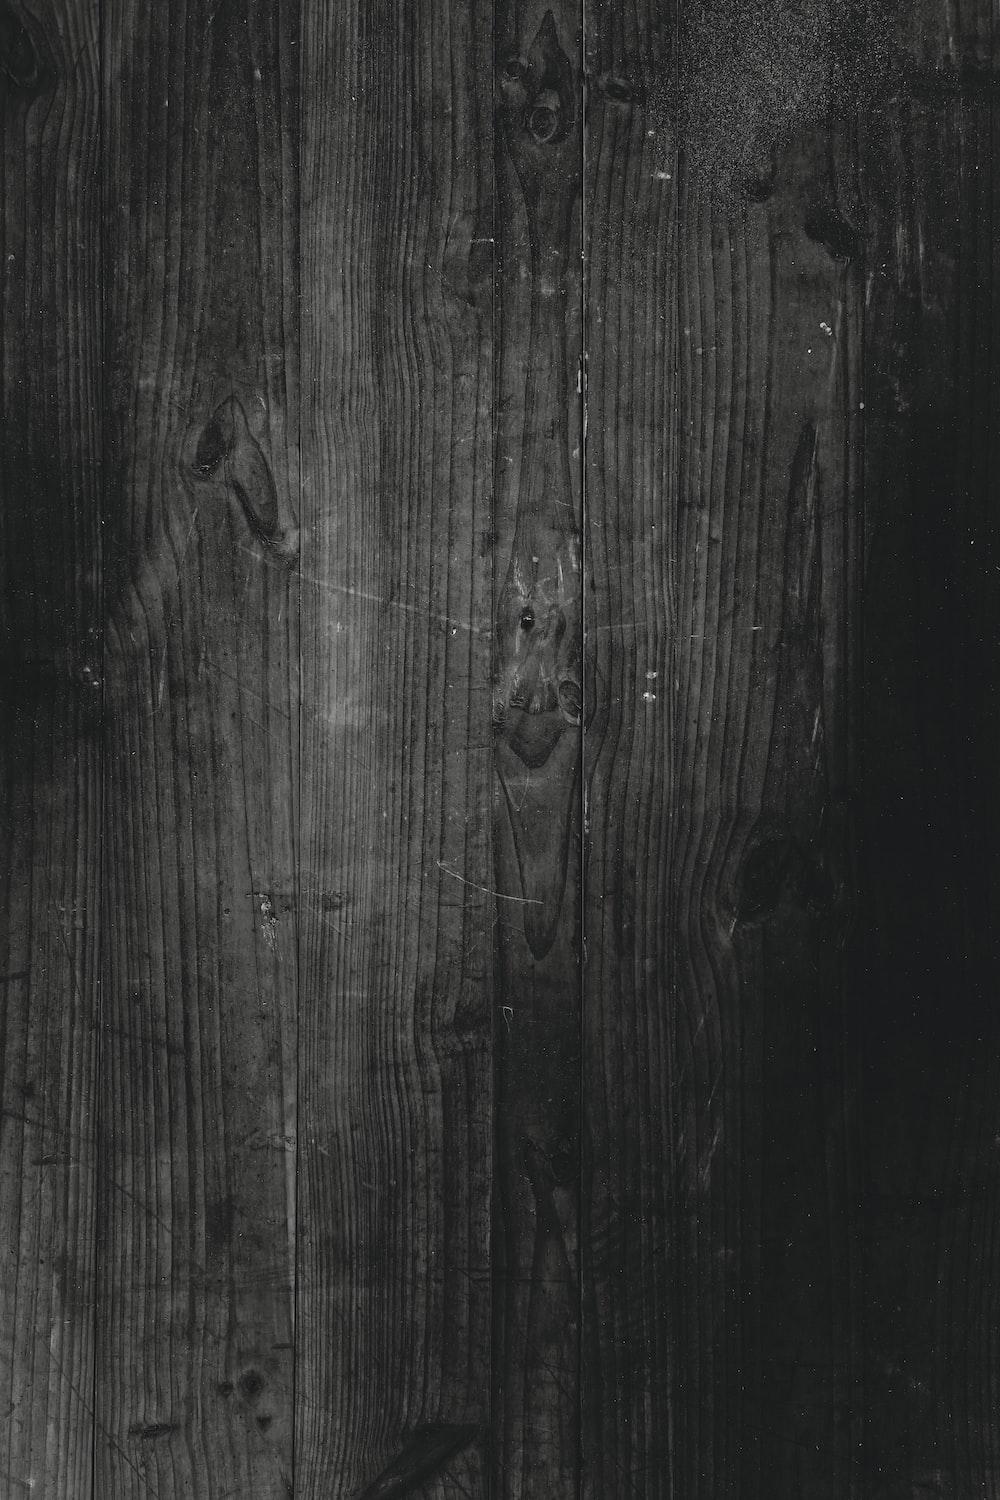 Dark Wood Texture Wallpapers - Top Free Dark Wood Texture Backgrounds ...